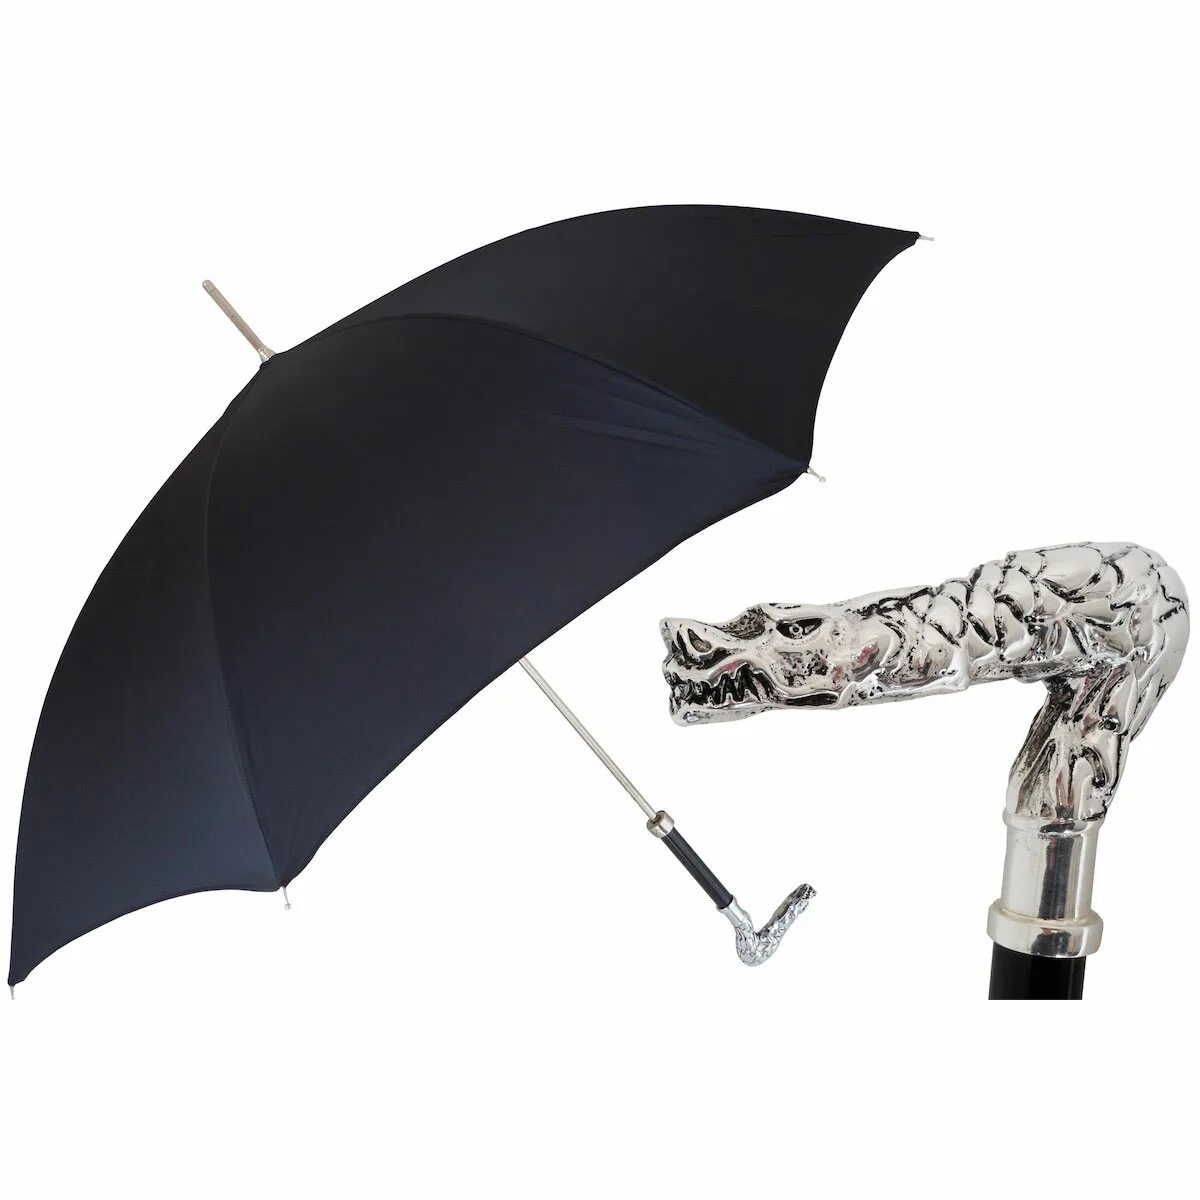 Зонт складной Pasotti. Зонт в руке. Мужской зонт трость. Зонт черный. Ручка зонтика